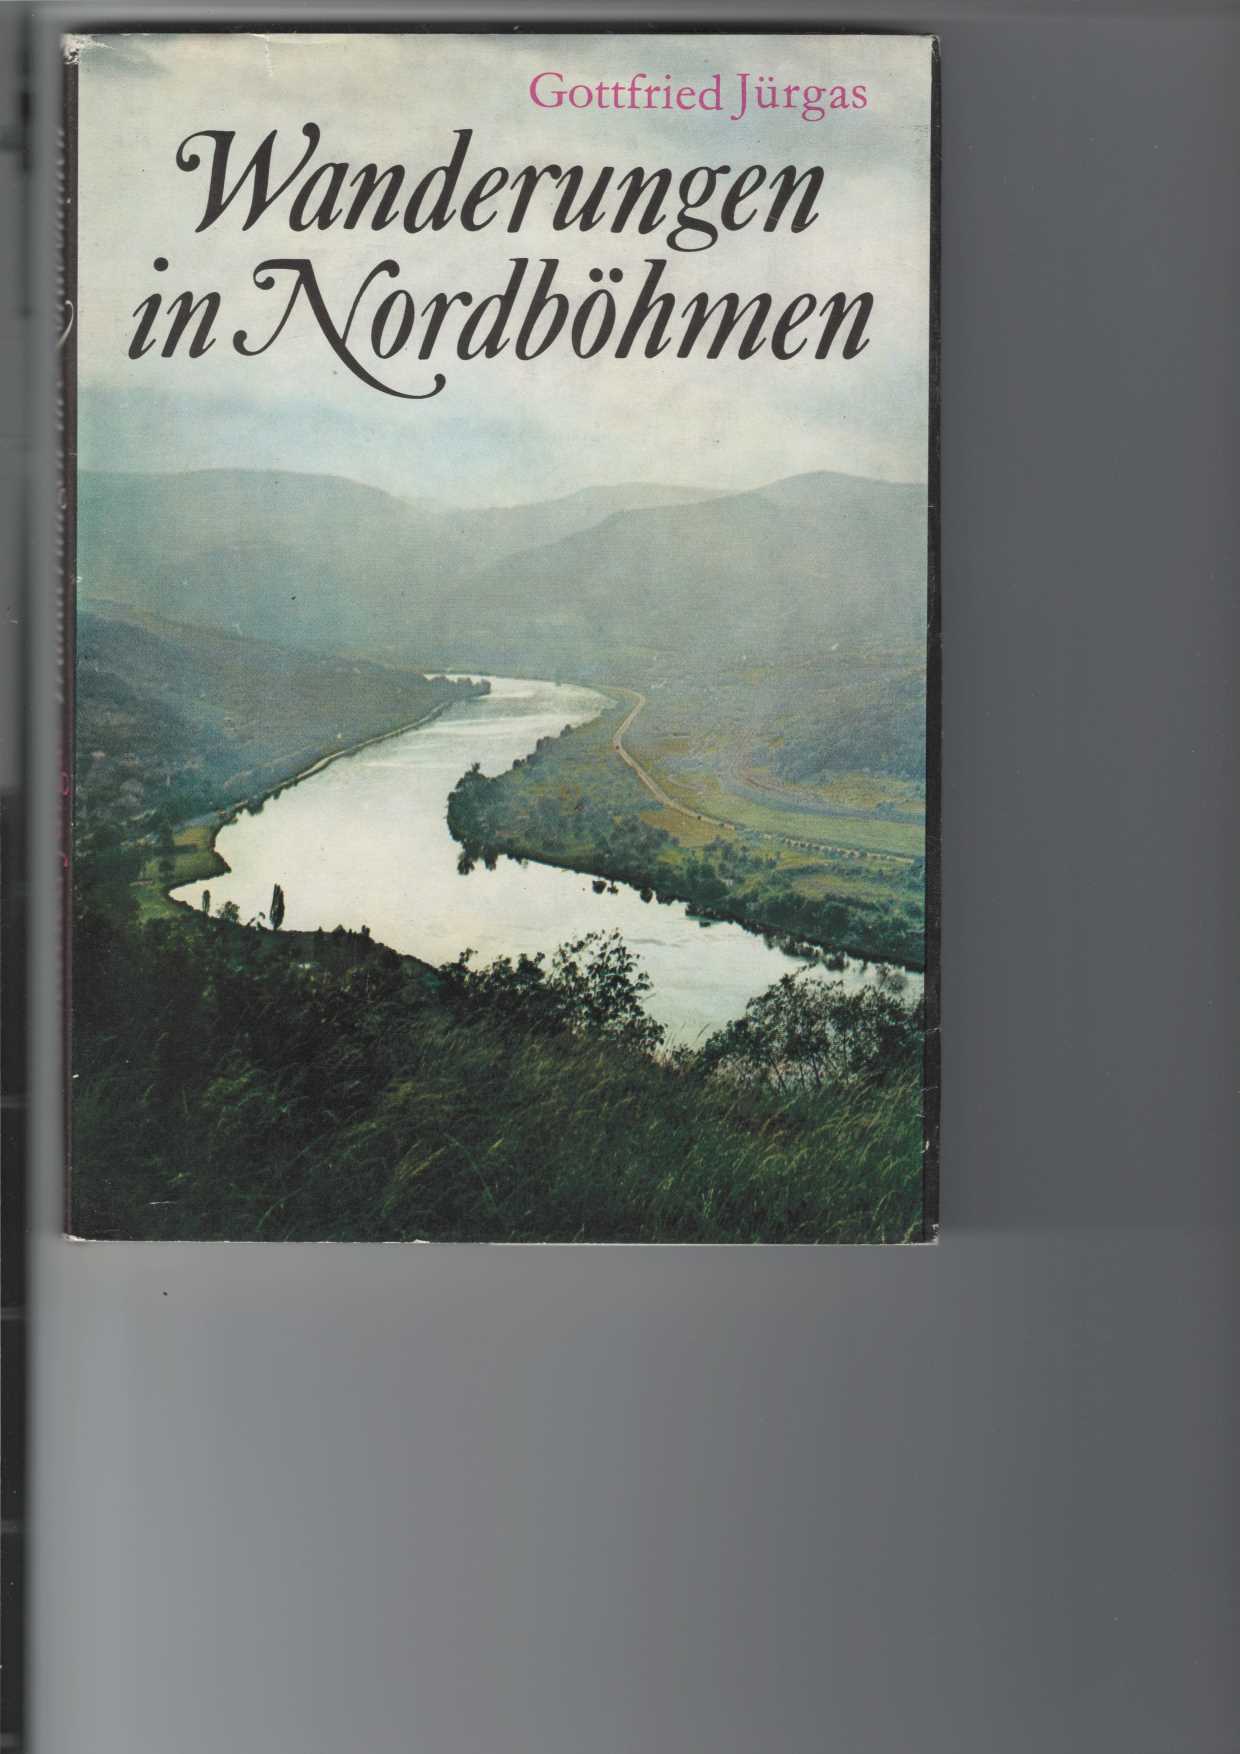 Wanderungen in Nordböhmen